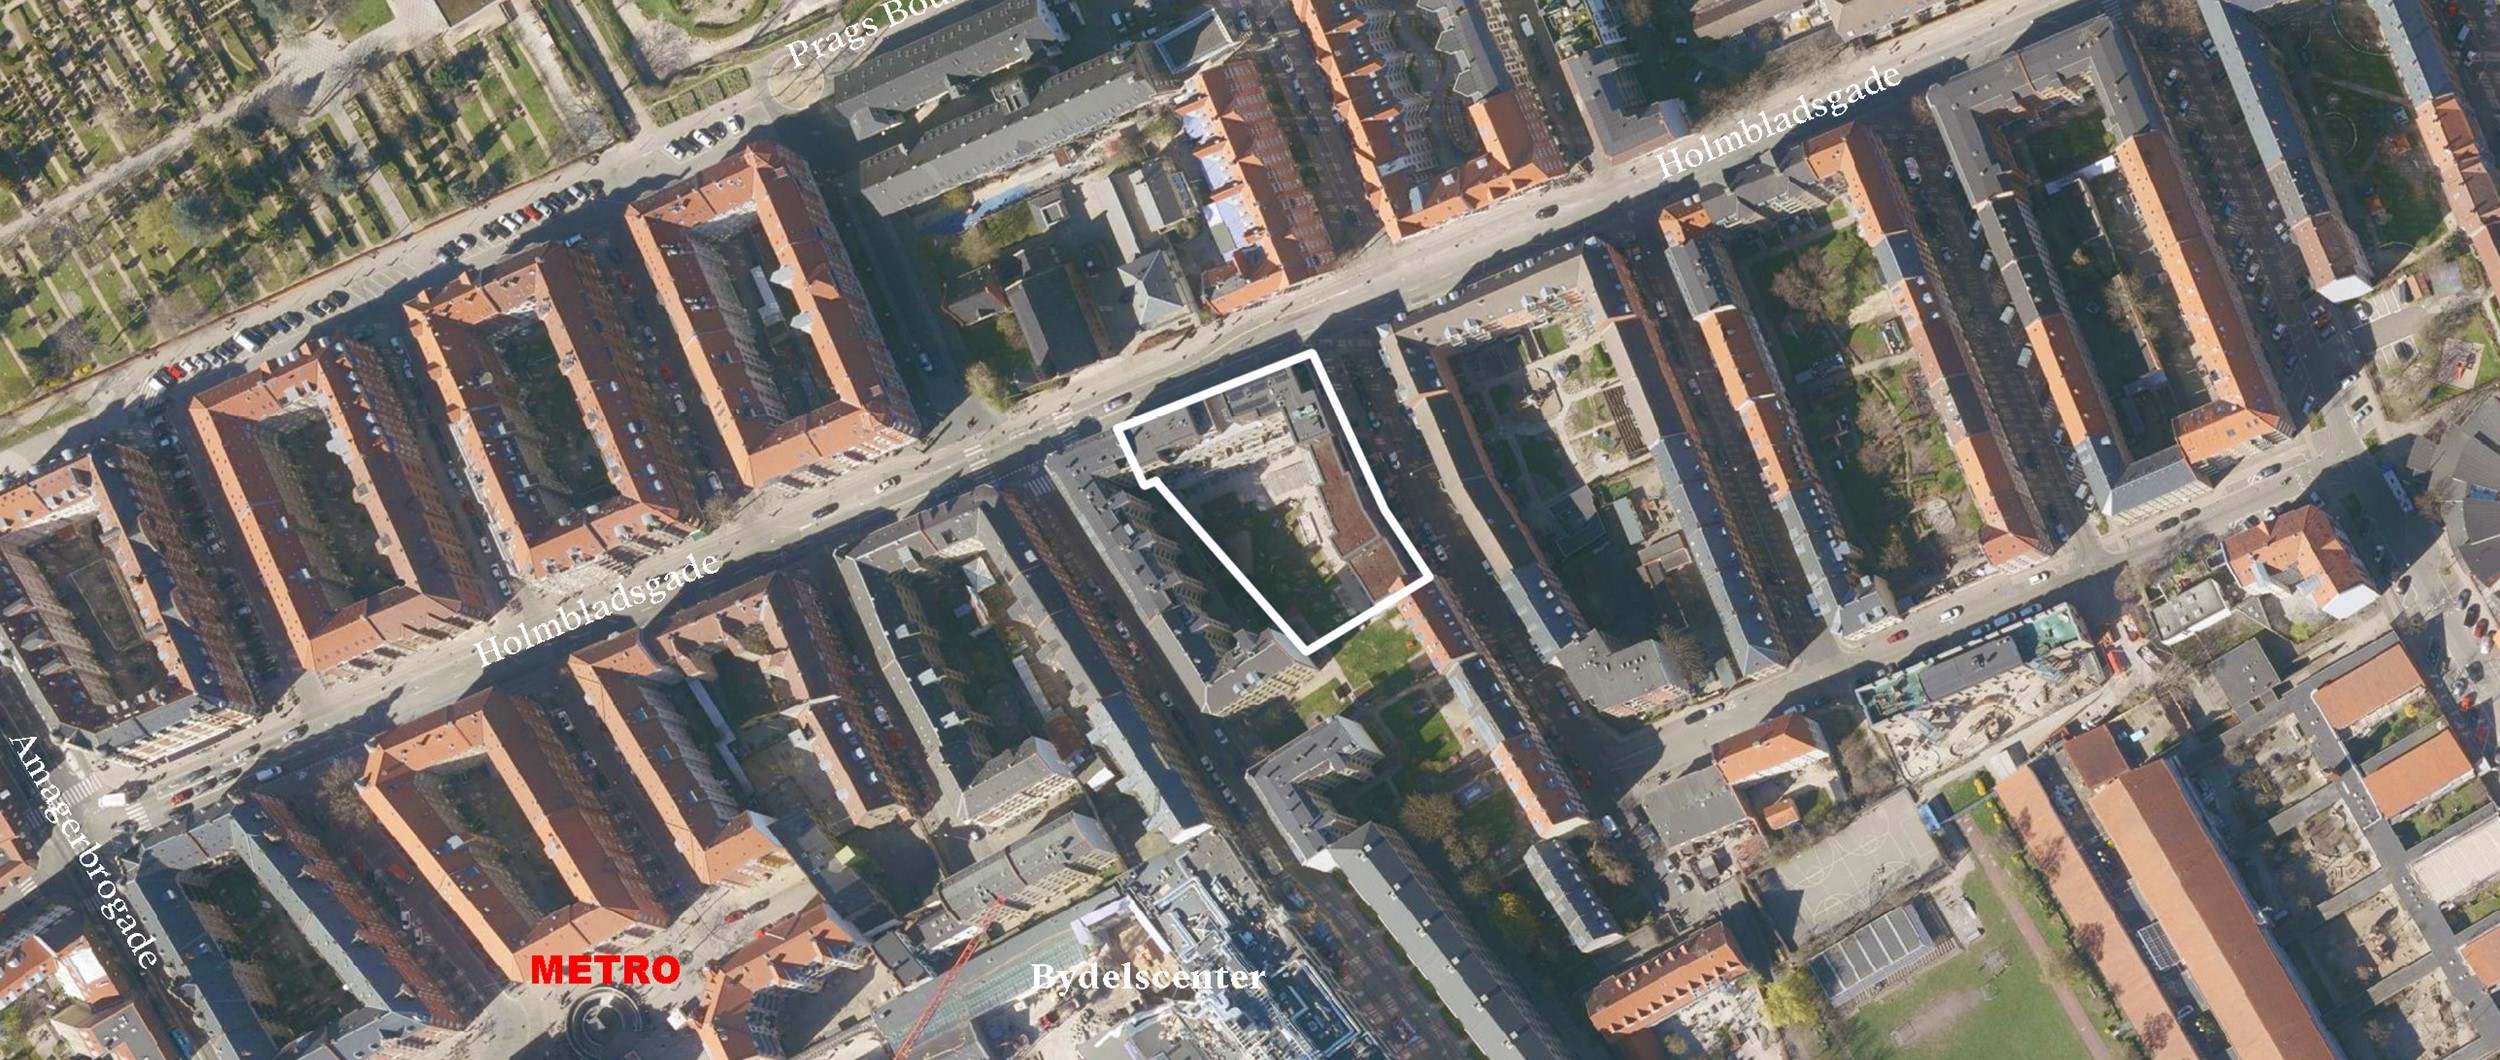 Projektet er beliggende i Holmbladsgadekvarteret, som siden 1997 har været under byfornyelse, og som er blevet et hip sted at bo.